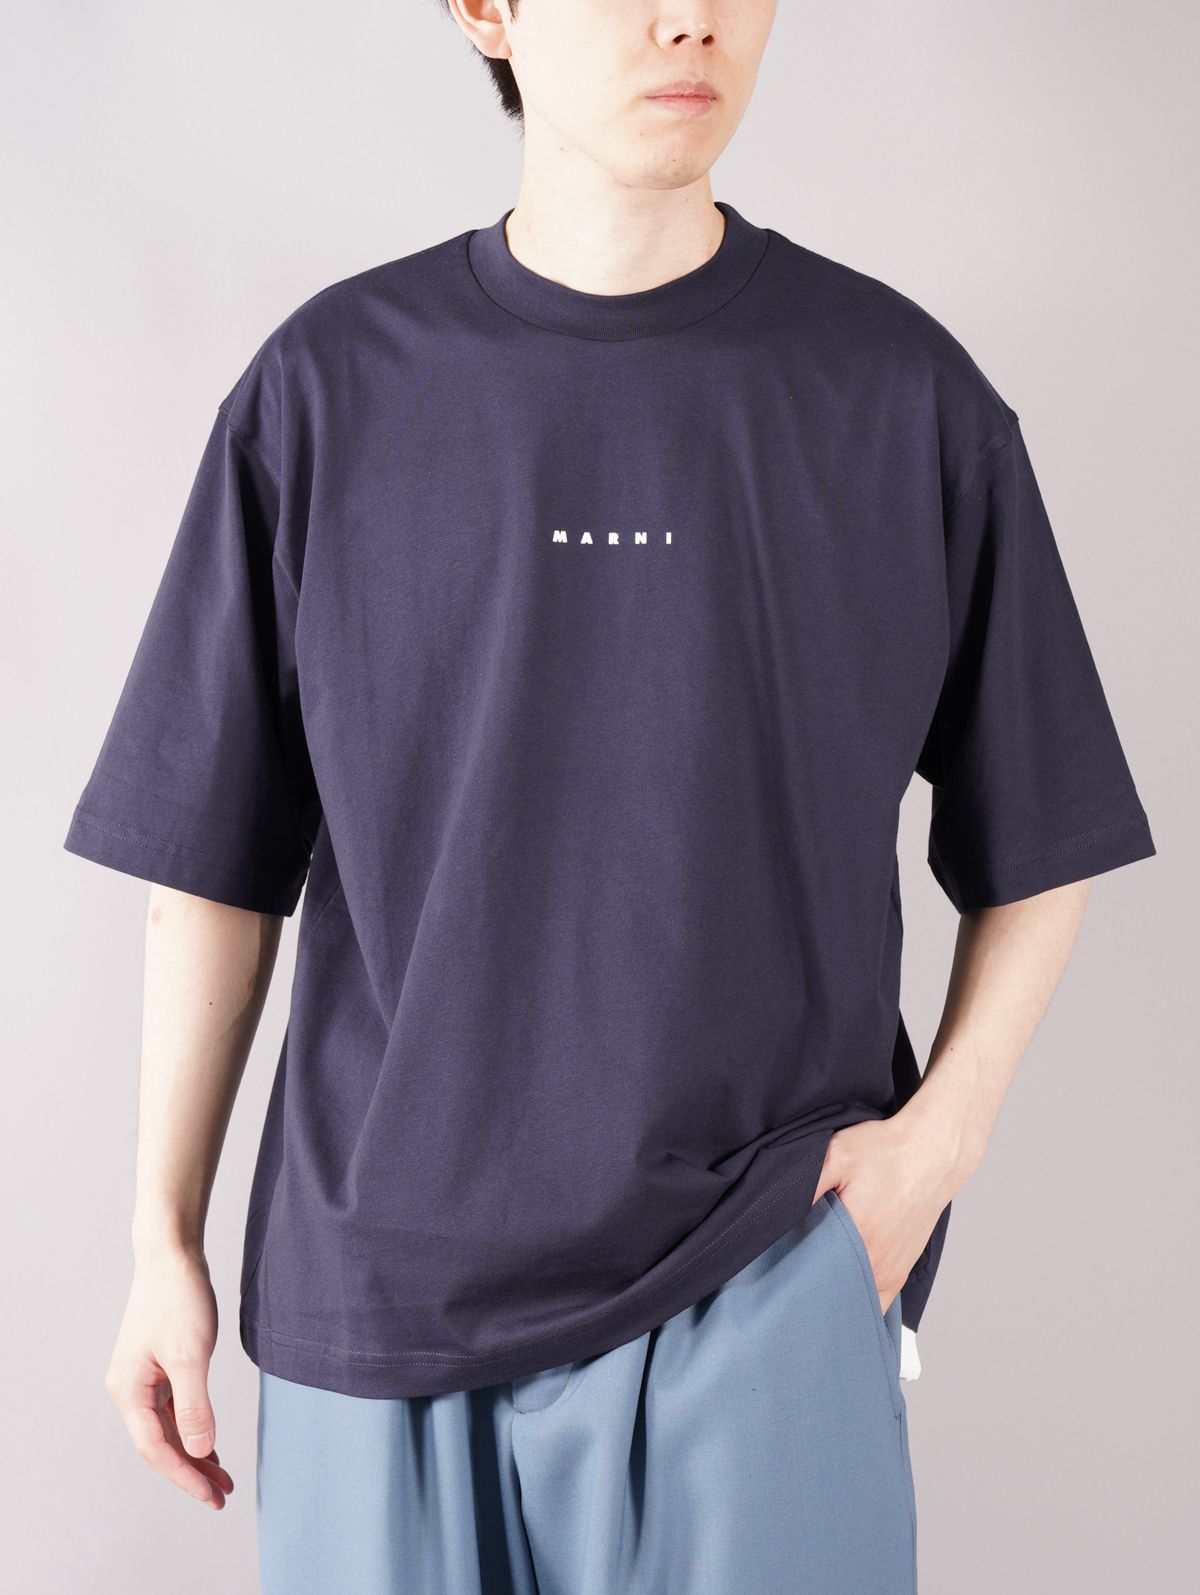 MARNI - 【ラスト1点】 LOGO T-SHIRT / ロゴ Tシャツ / オーバーサイズ 